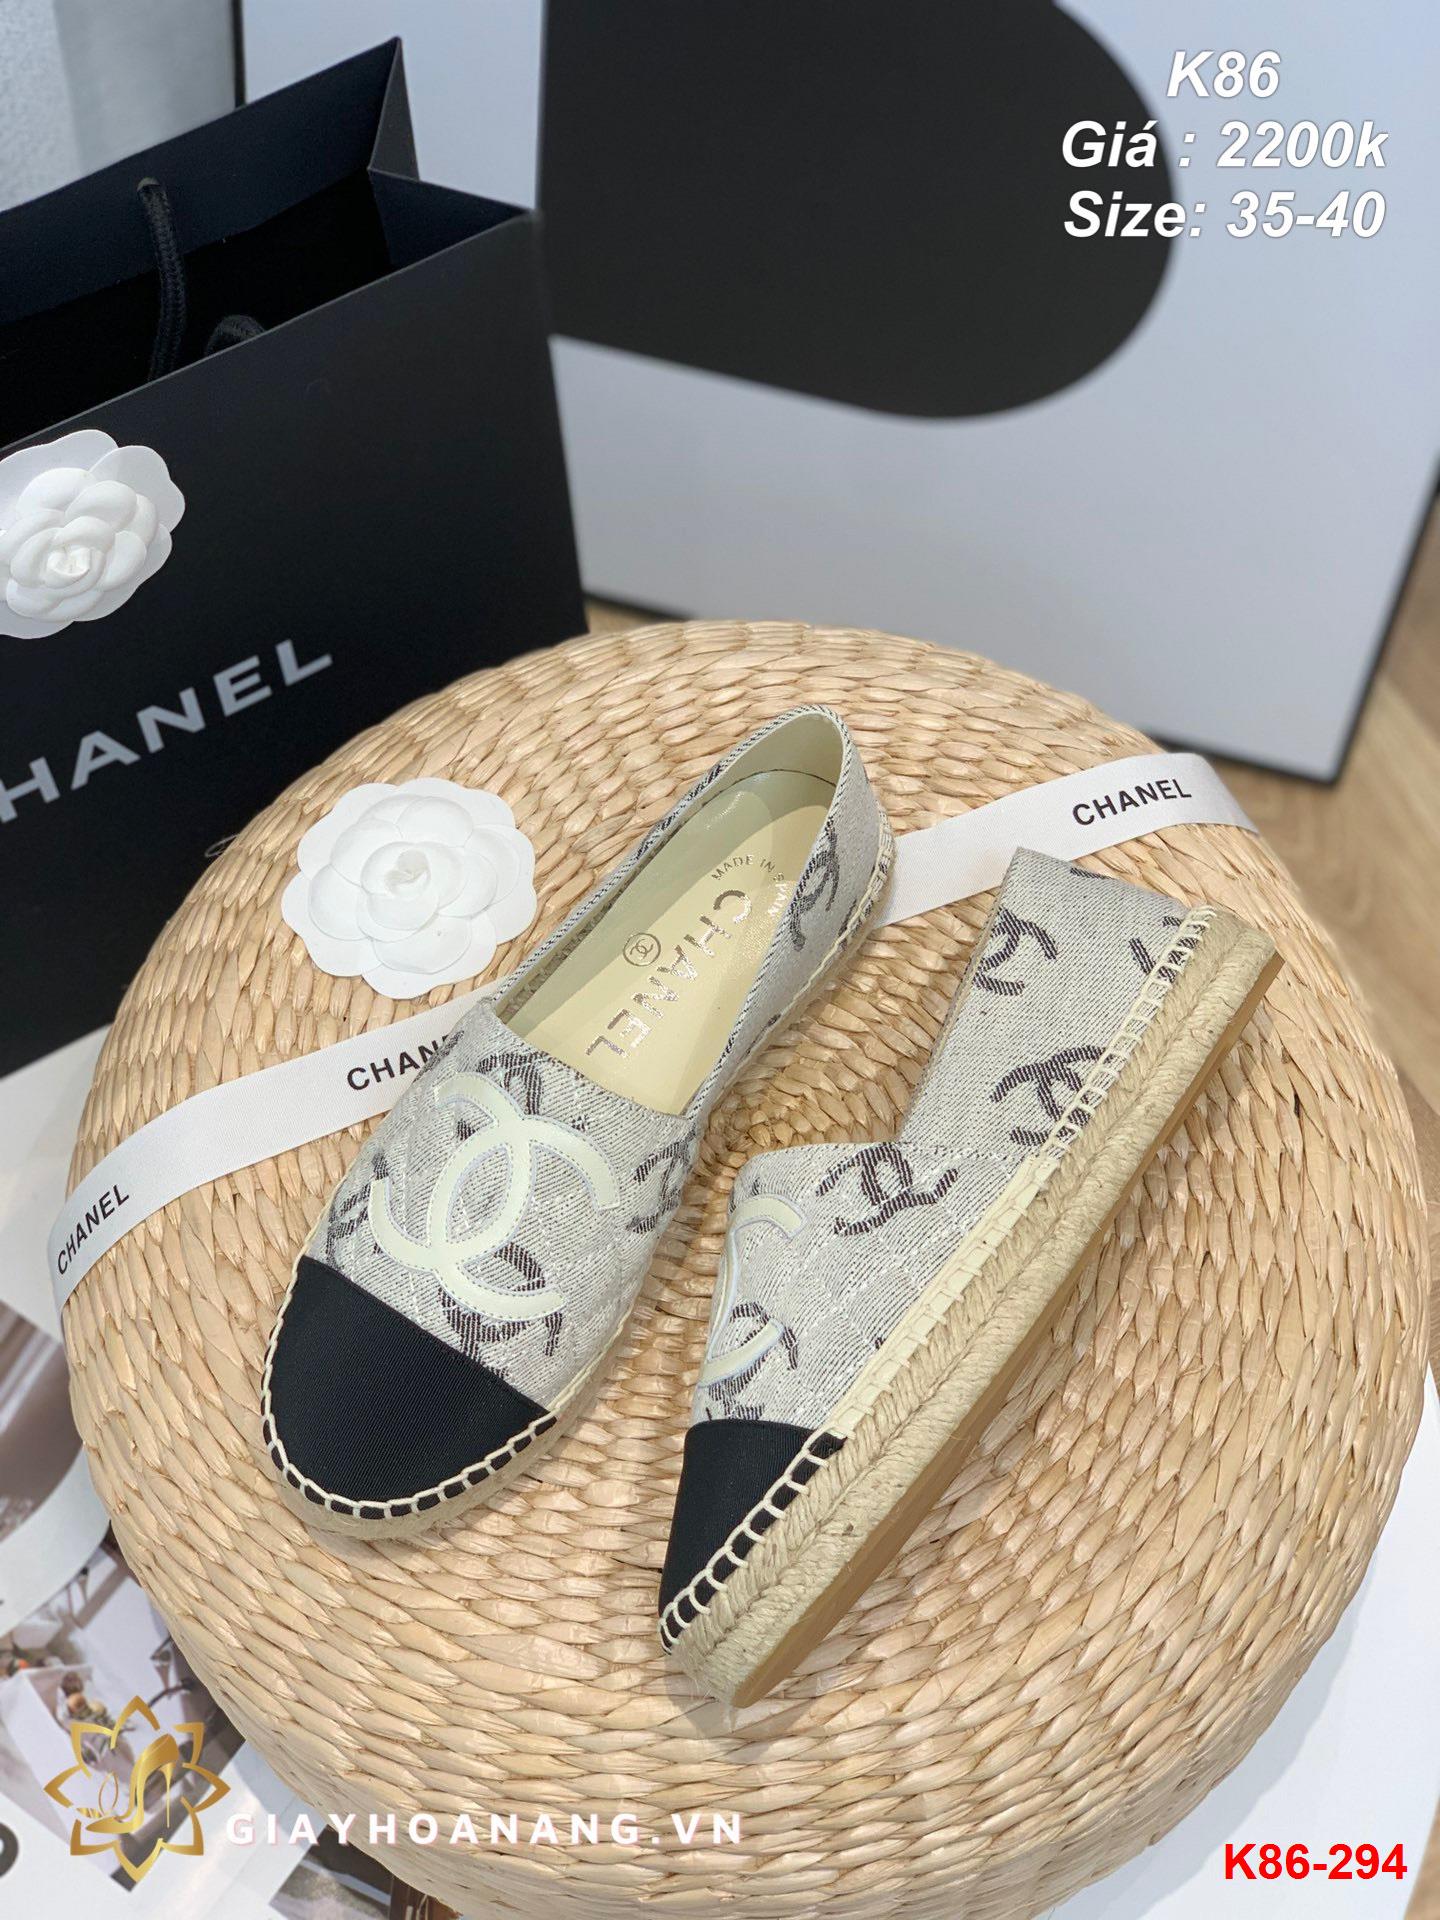 K86-294 Chanel giày lười siêu cấp